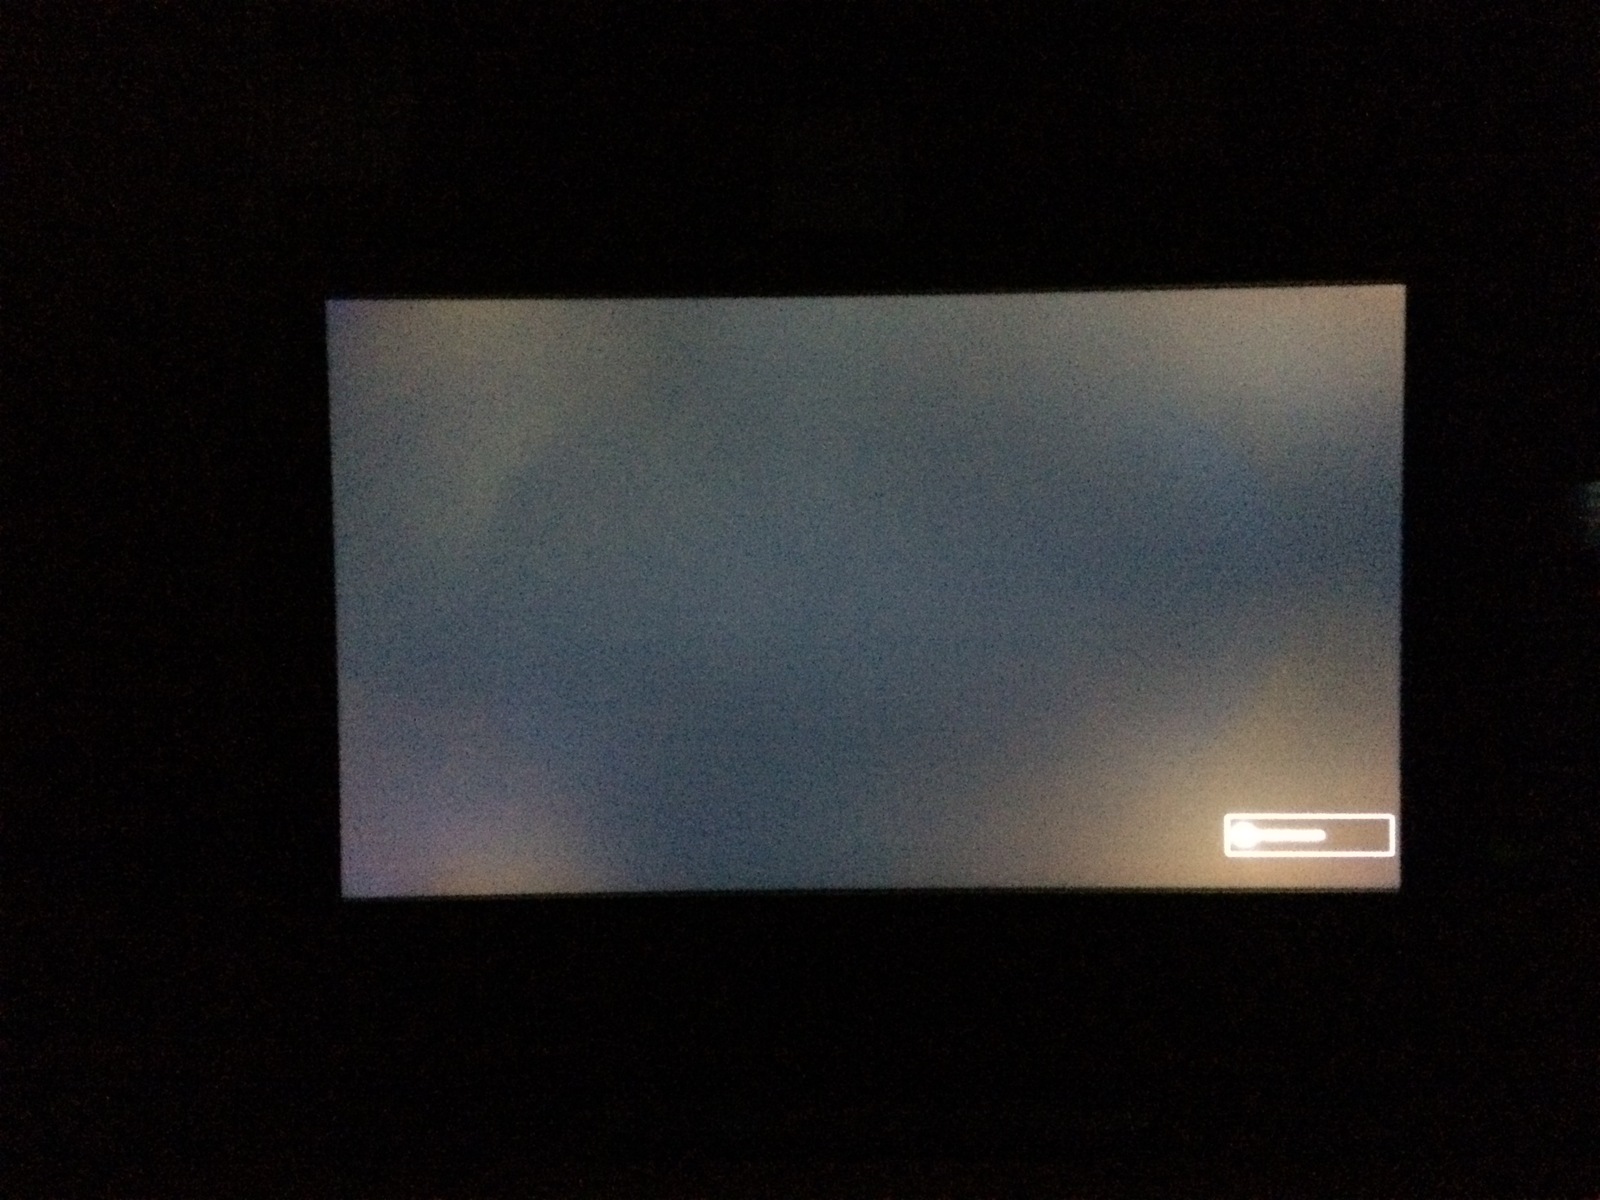 Телевизор без подсветки. LG 2243s неравномерная подсветка. Неравномерная подсветка матрицы. Неравномерная подсветка экрана. Засветка экрана.